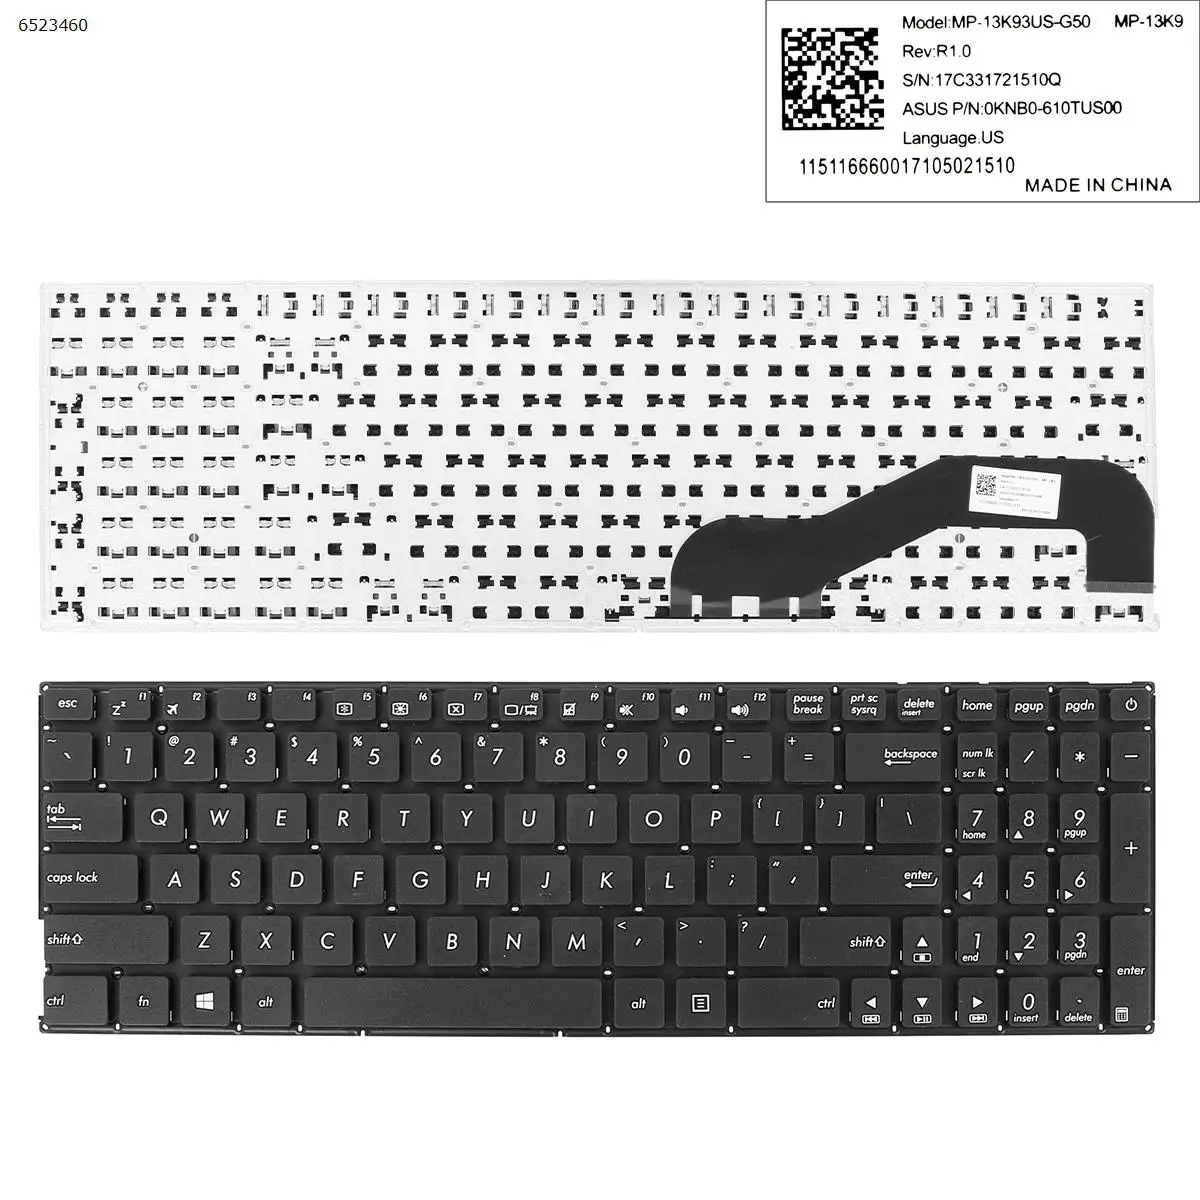 

US New Keyboard For ASUS X540 X540LA X540LJ X540SA X540SC X540YA X540UV X540MA X540BP X540MB X540BA X540NA Laptop No Frame